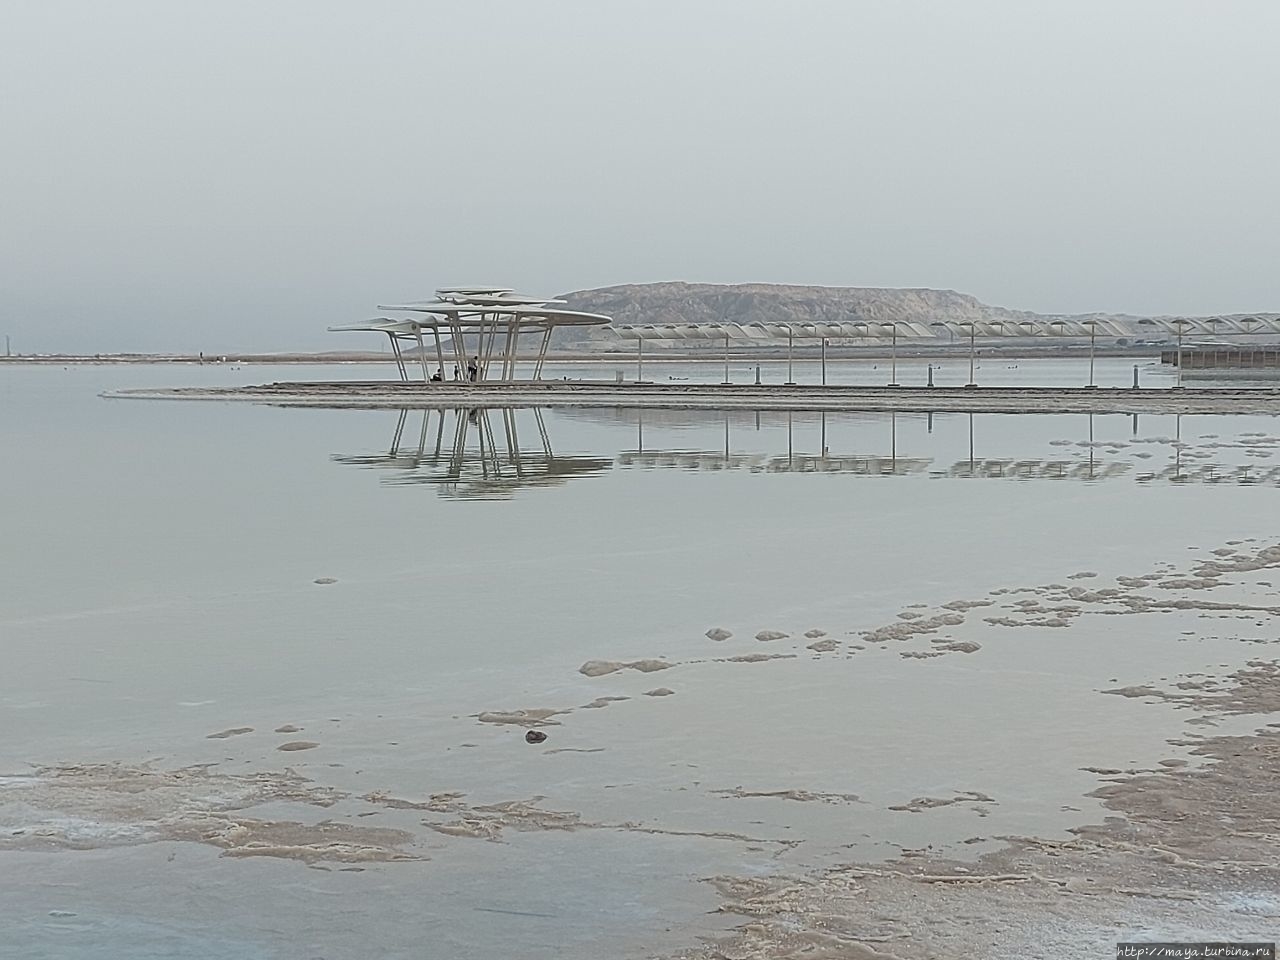 Мертвое море с любовью. Эйн-Бокек, Израиль